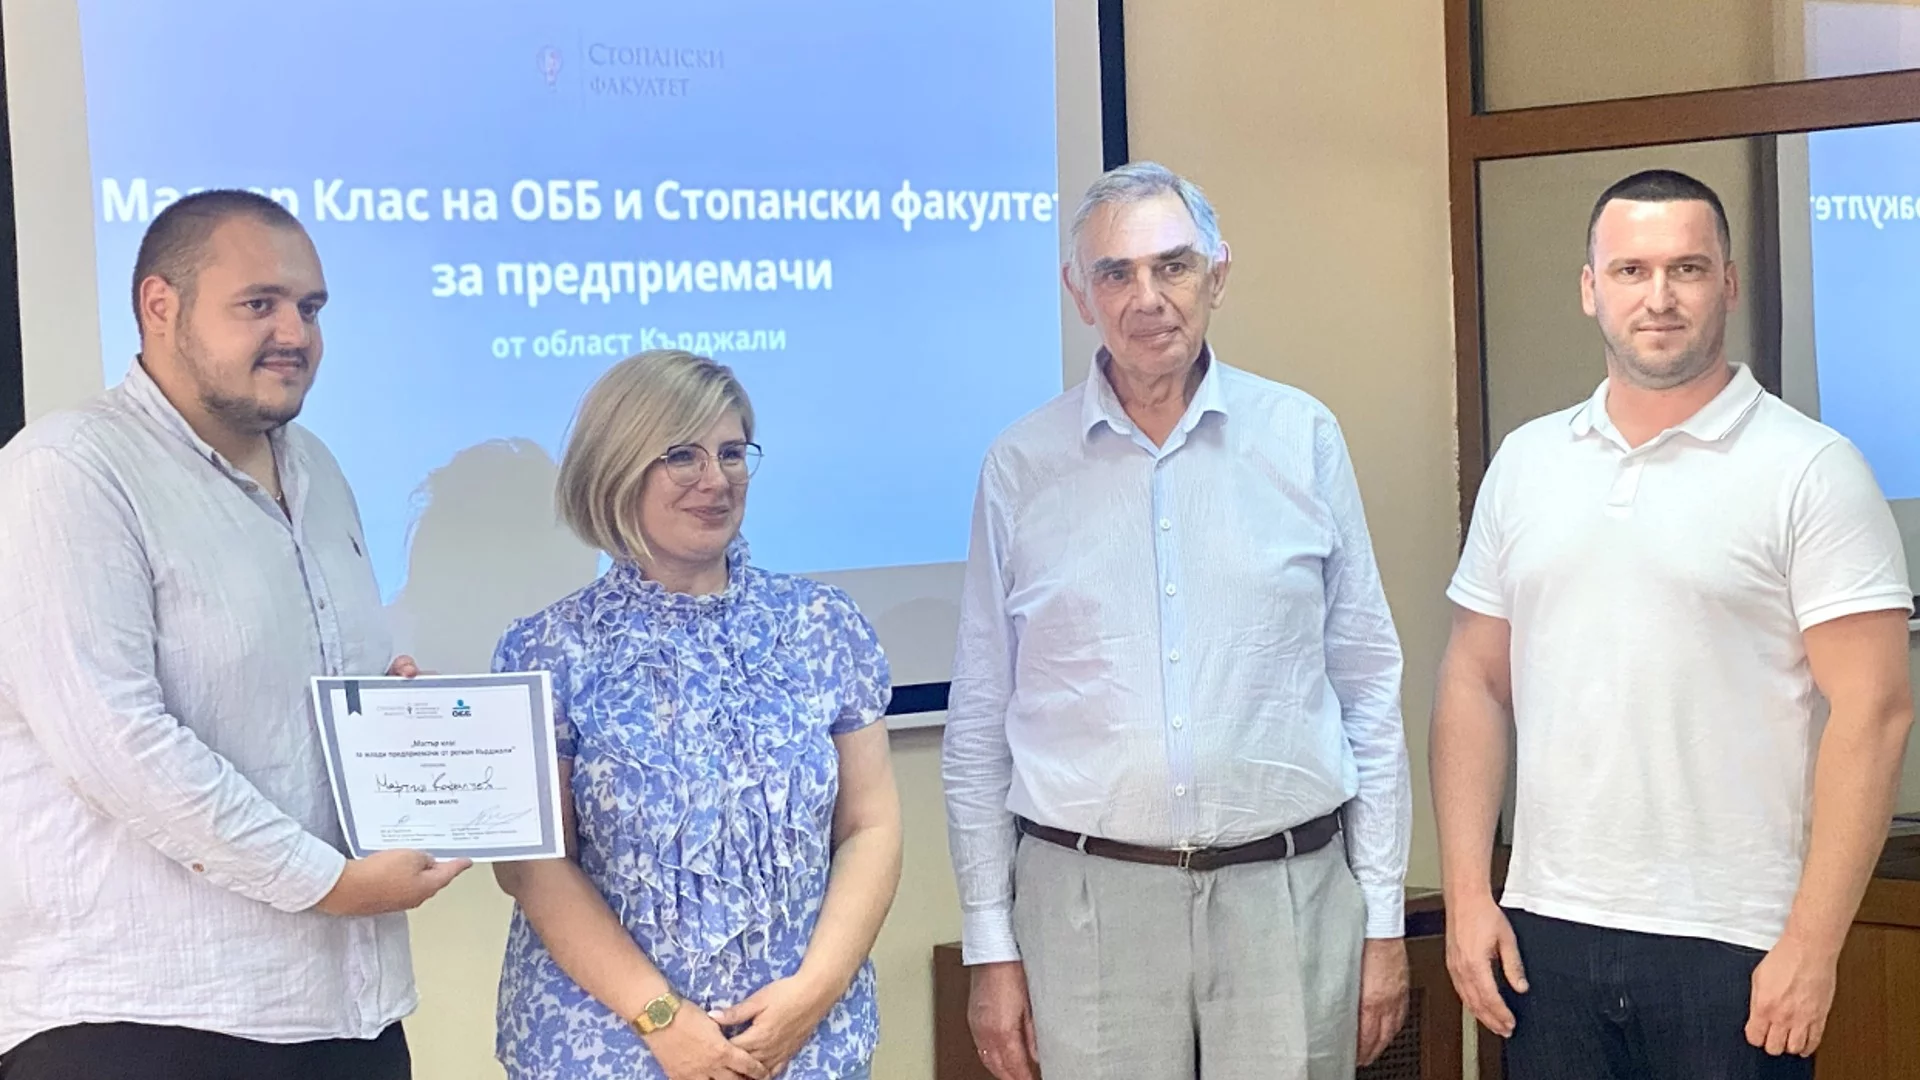 ОББ и Стопански факултет на СУ „Св. Климент Охридски“ подкрепят млади предприемачи от област Кърджали